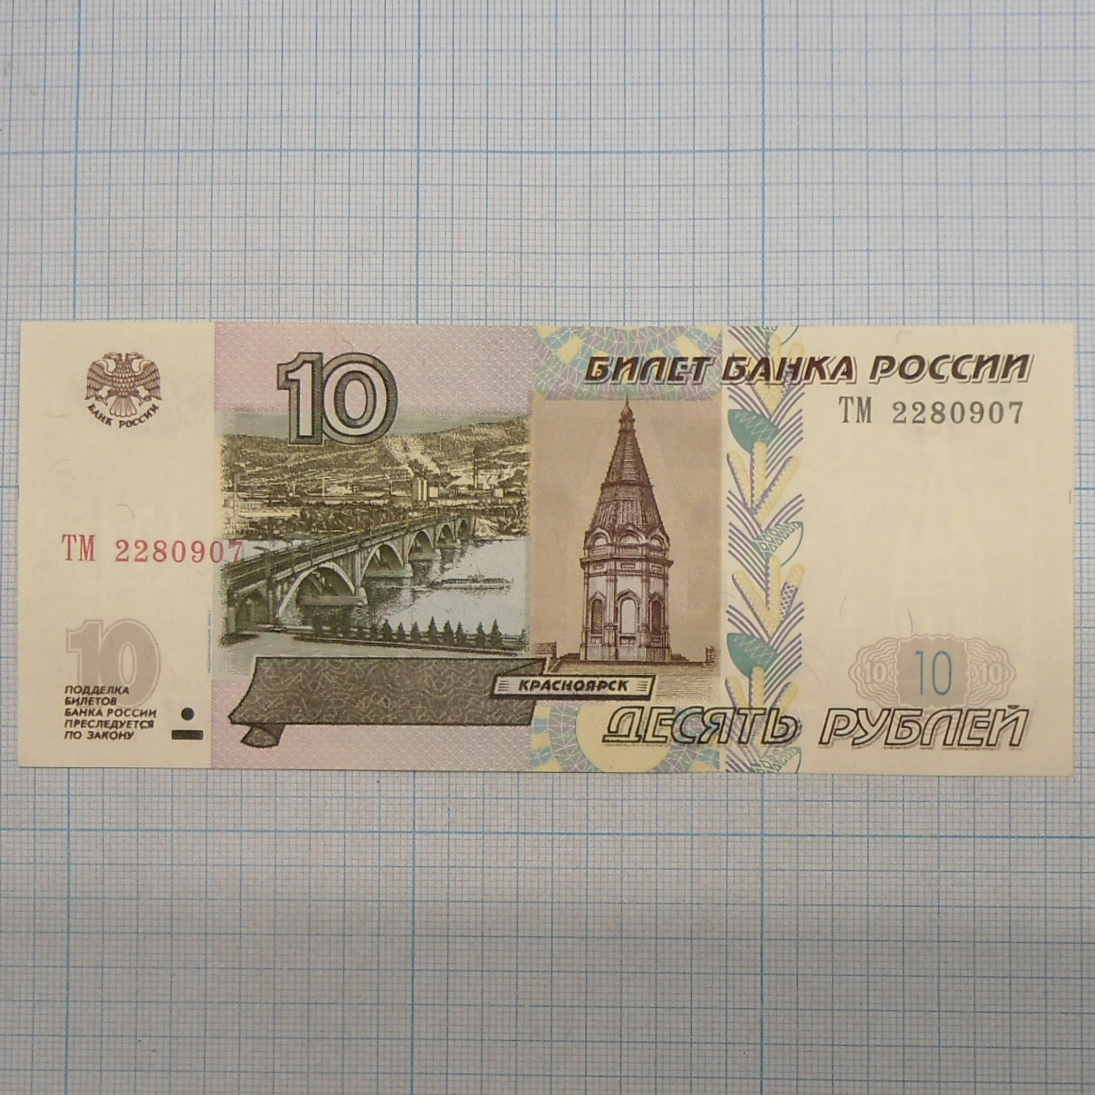 в москве 500 рублей